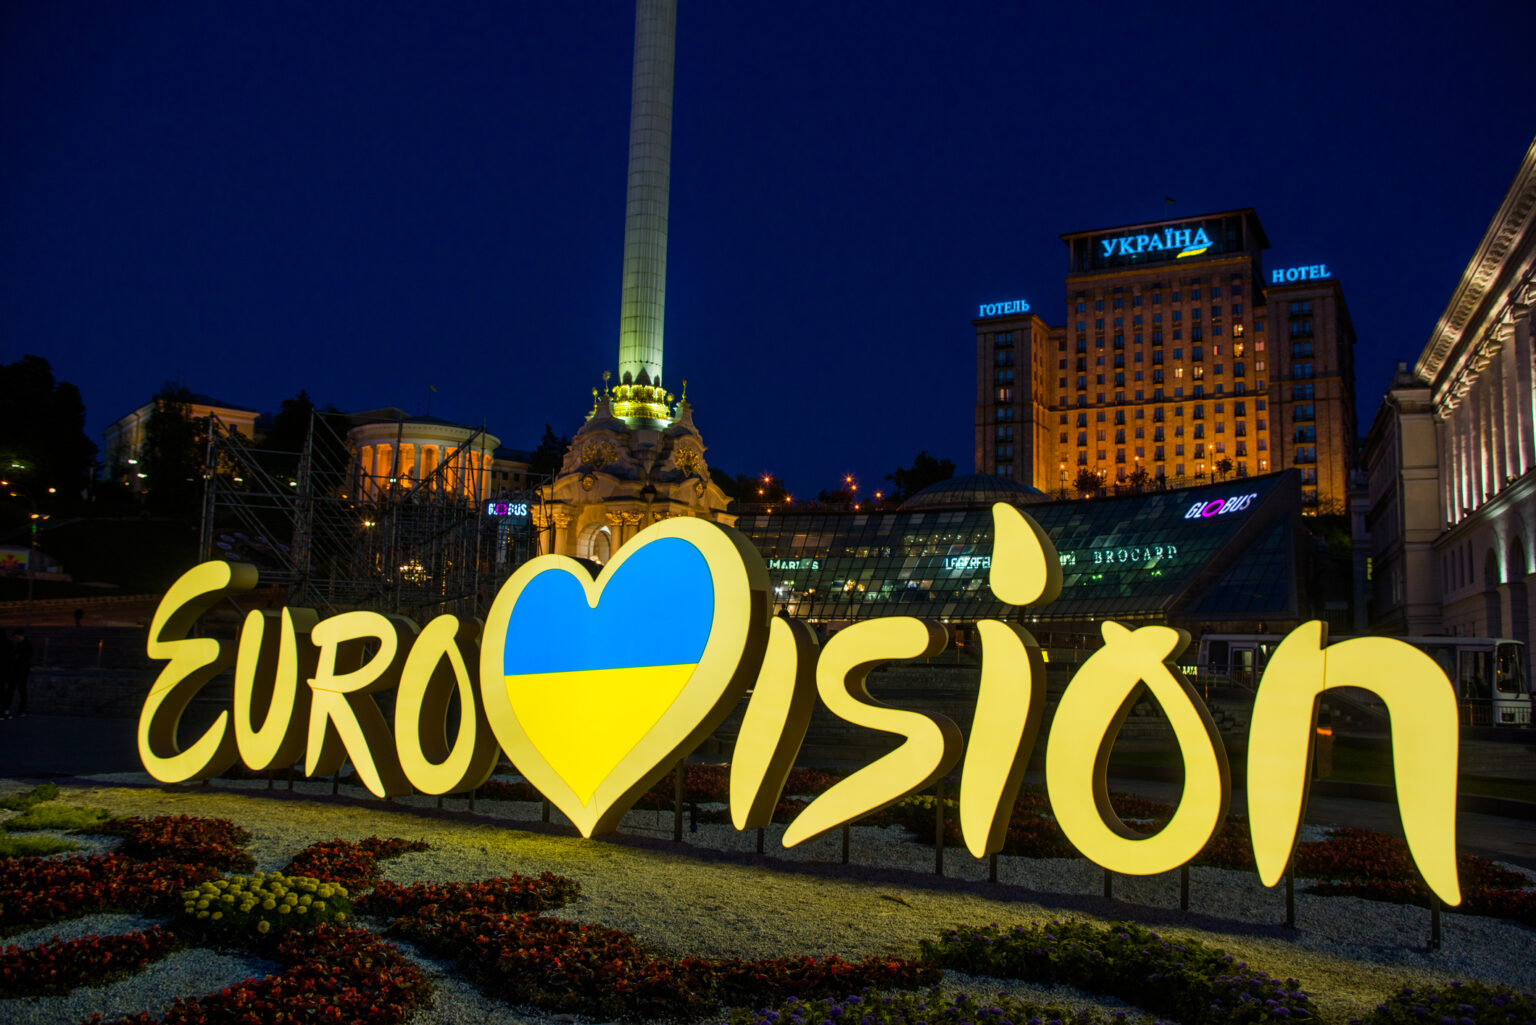 Reprezentantul Ucrainei la Eurovision 2023 va fi Tvorchi, după o selecție desfășurată într-un adăpost antiatomic. VIDEO